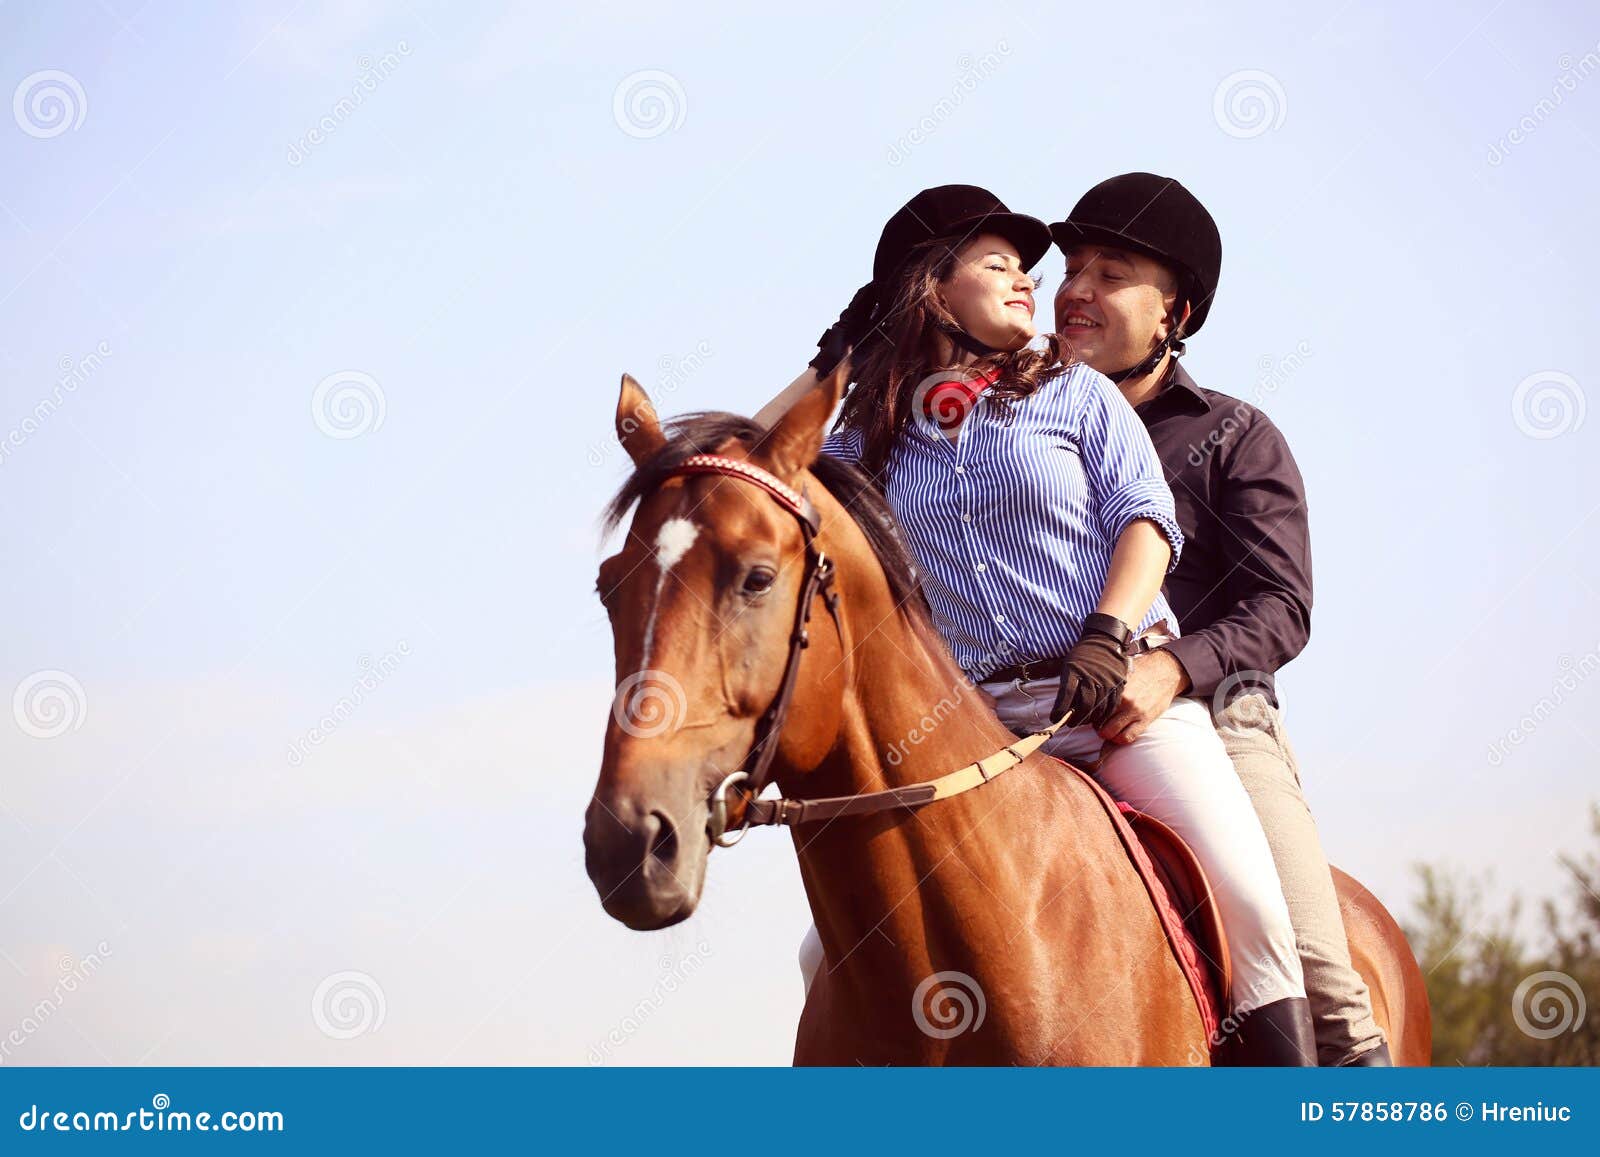 Мы вновь ехали на лошадях и любовались